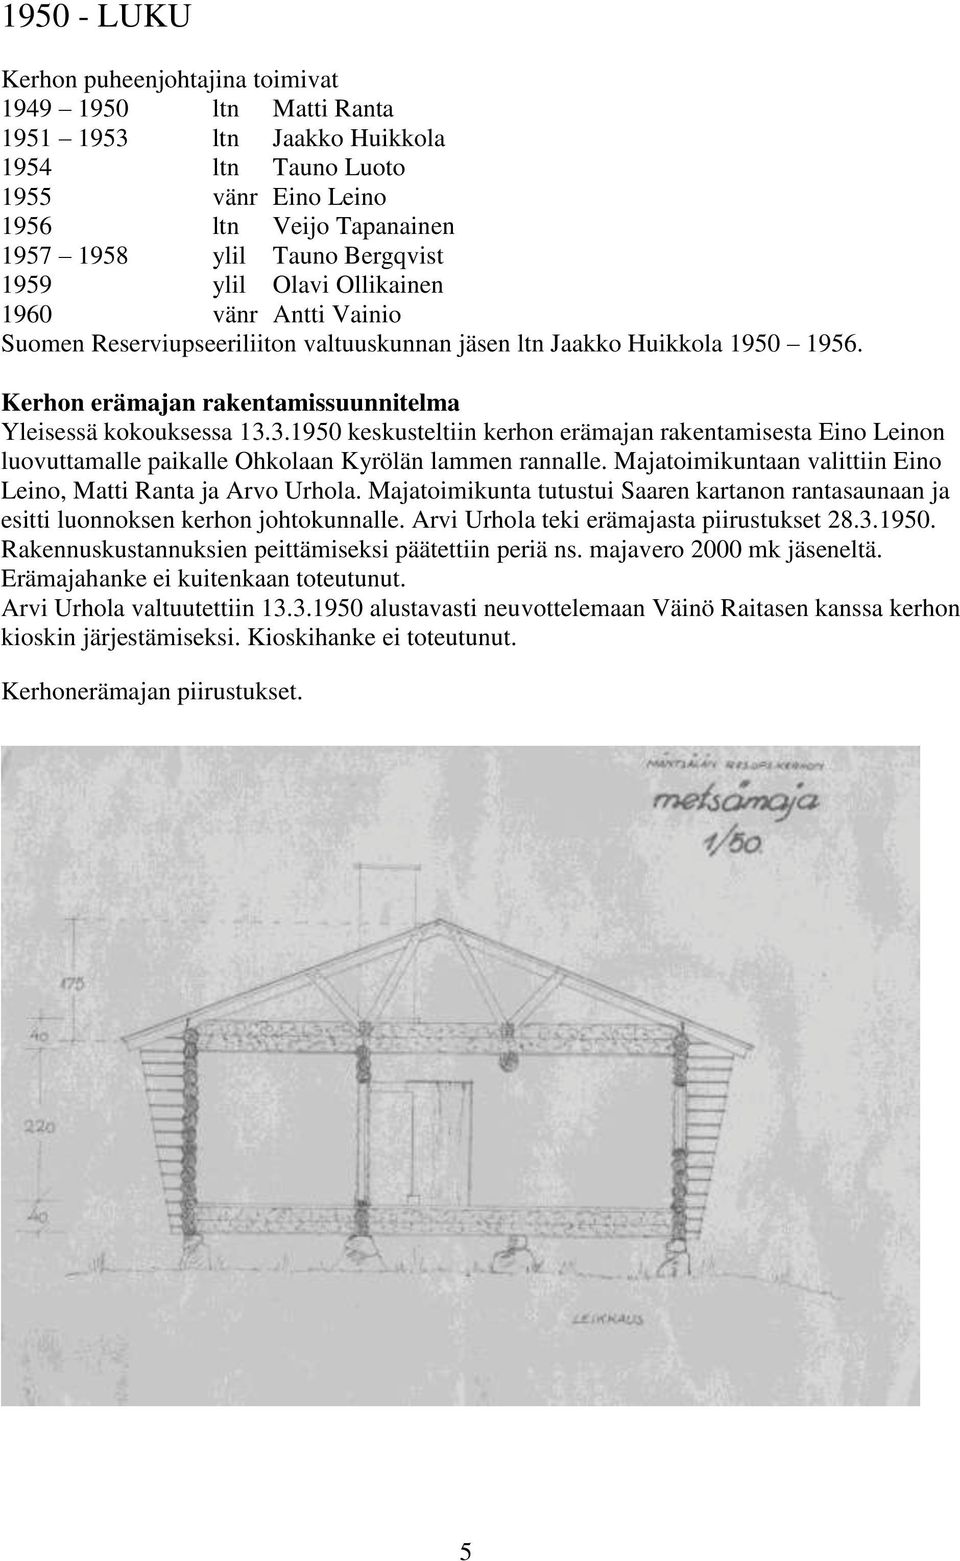 3.1950 keskusteltiin kerhon erämajan rakentamisesta Eino Leinon luovuttamalle paikalle Ohkolaan Kyrölän lammen rannalle. Majatoimikuntaan valittiin Eino Leino, Matti Ranta ja Arvo Urhola.